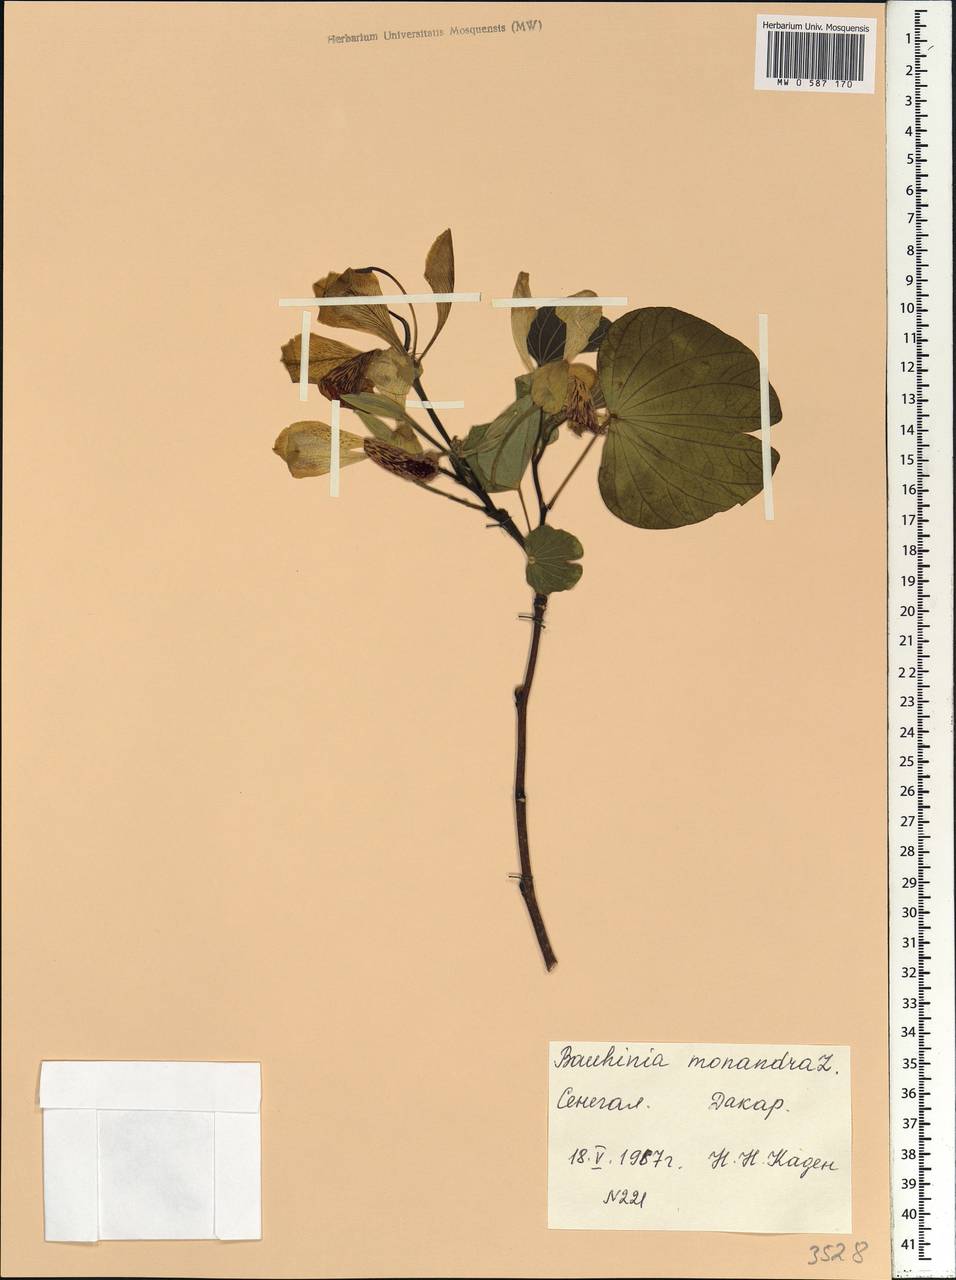 Bauhinia monandra Kurz, Africa (AFR) (Senegal)